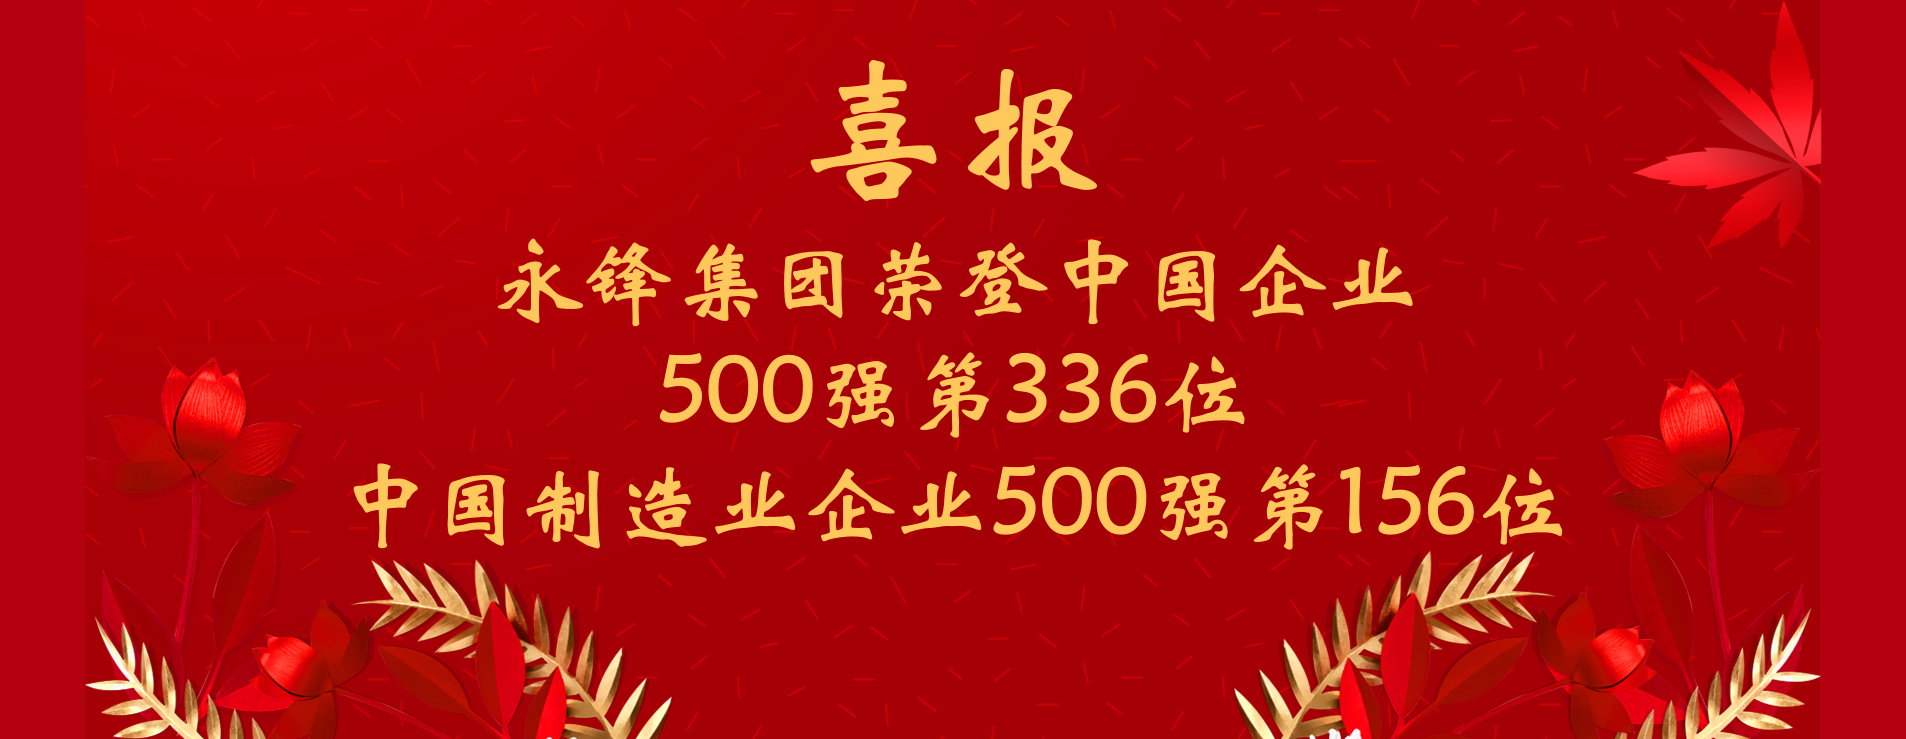 永锋荣登“中国企业500强”“中国制造业企业500强”榜单